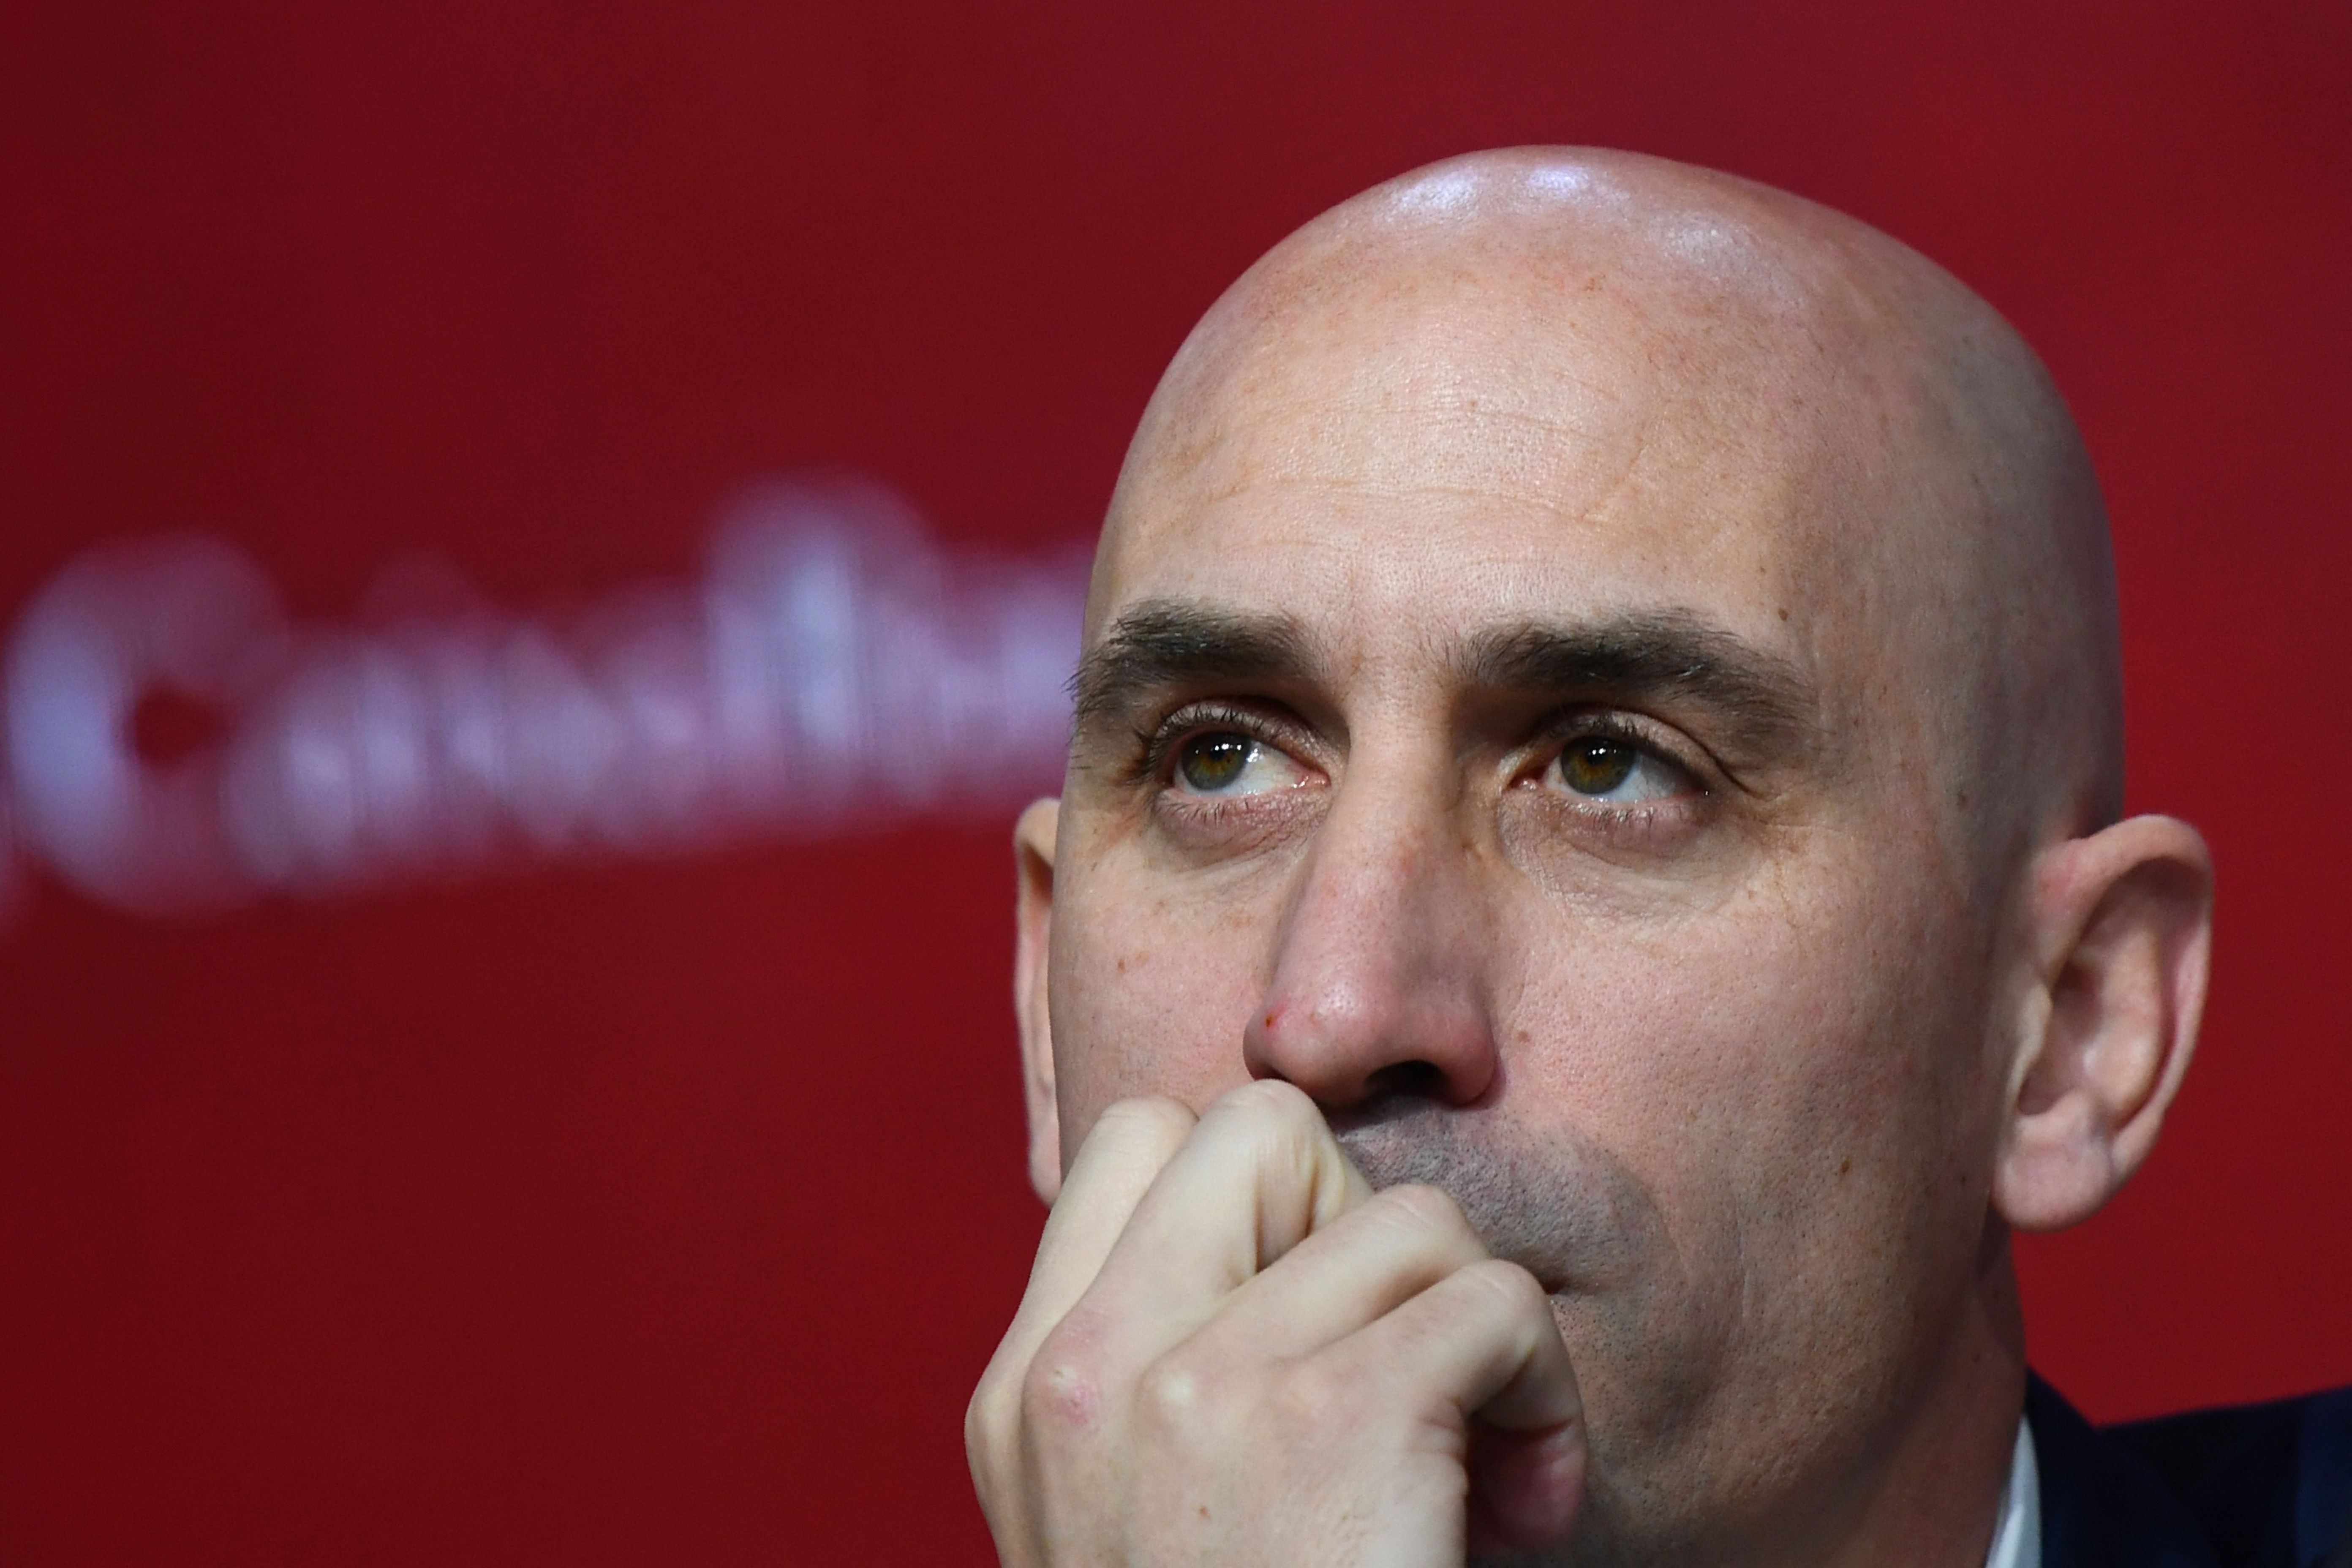 El presidente de la Federación Española de Futbol está envuelto en polémica